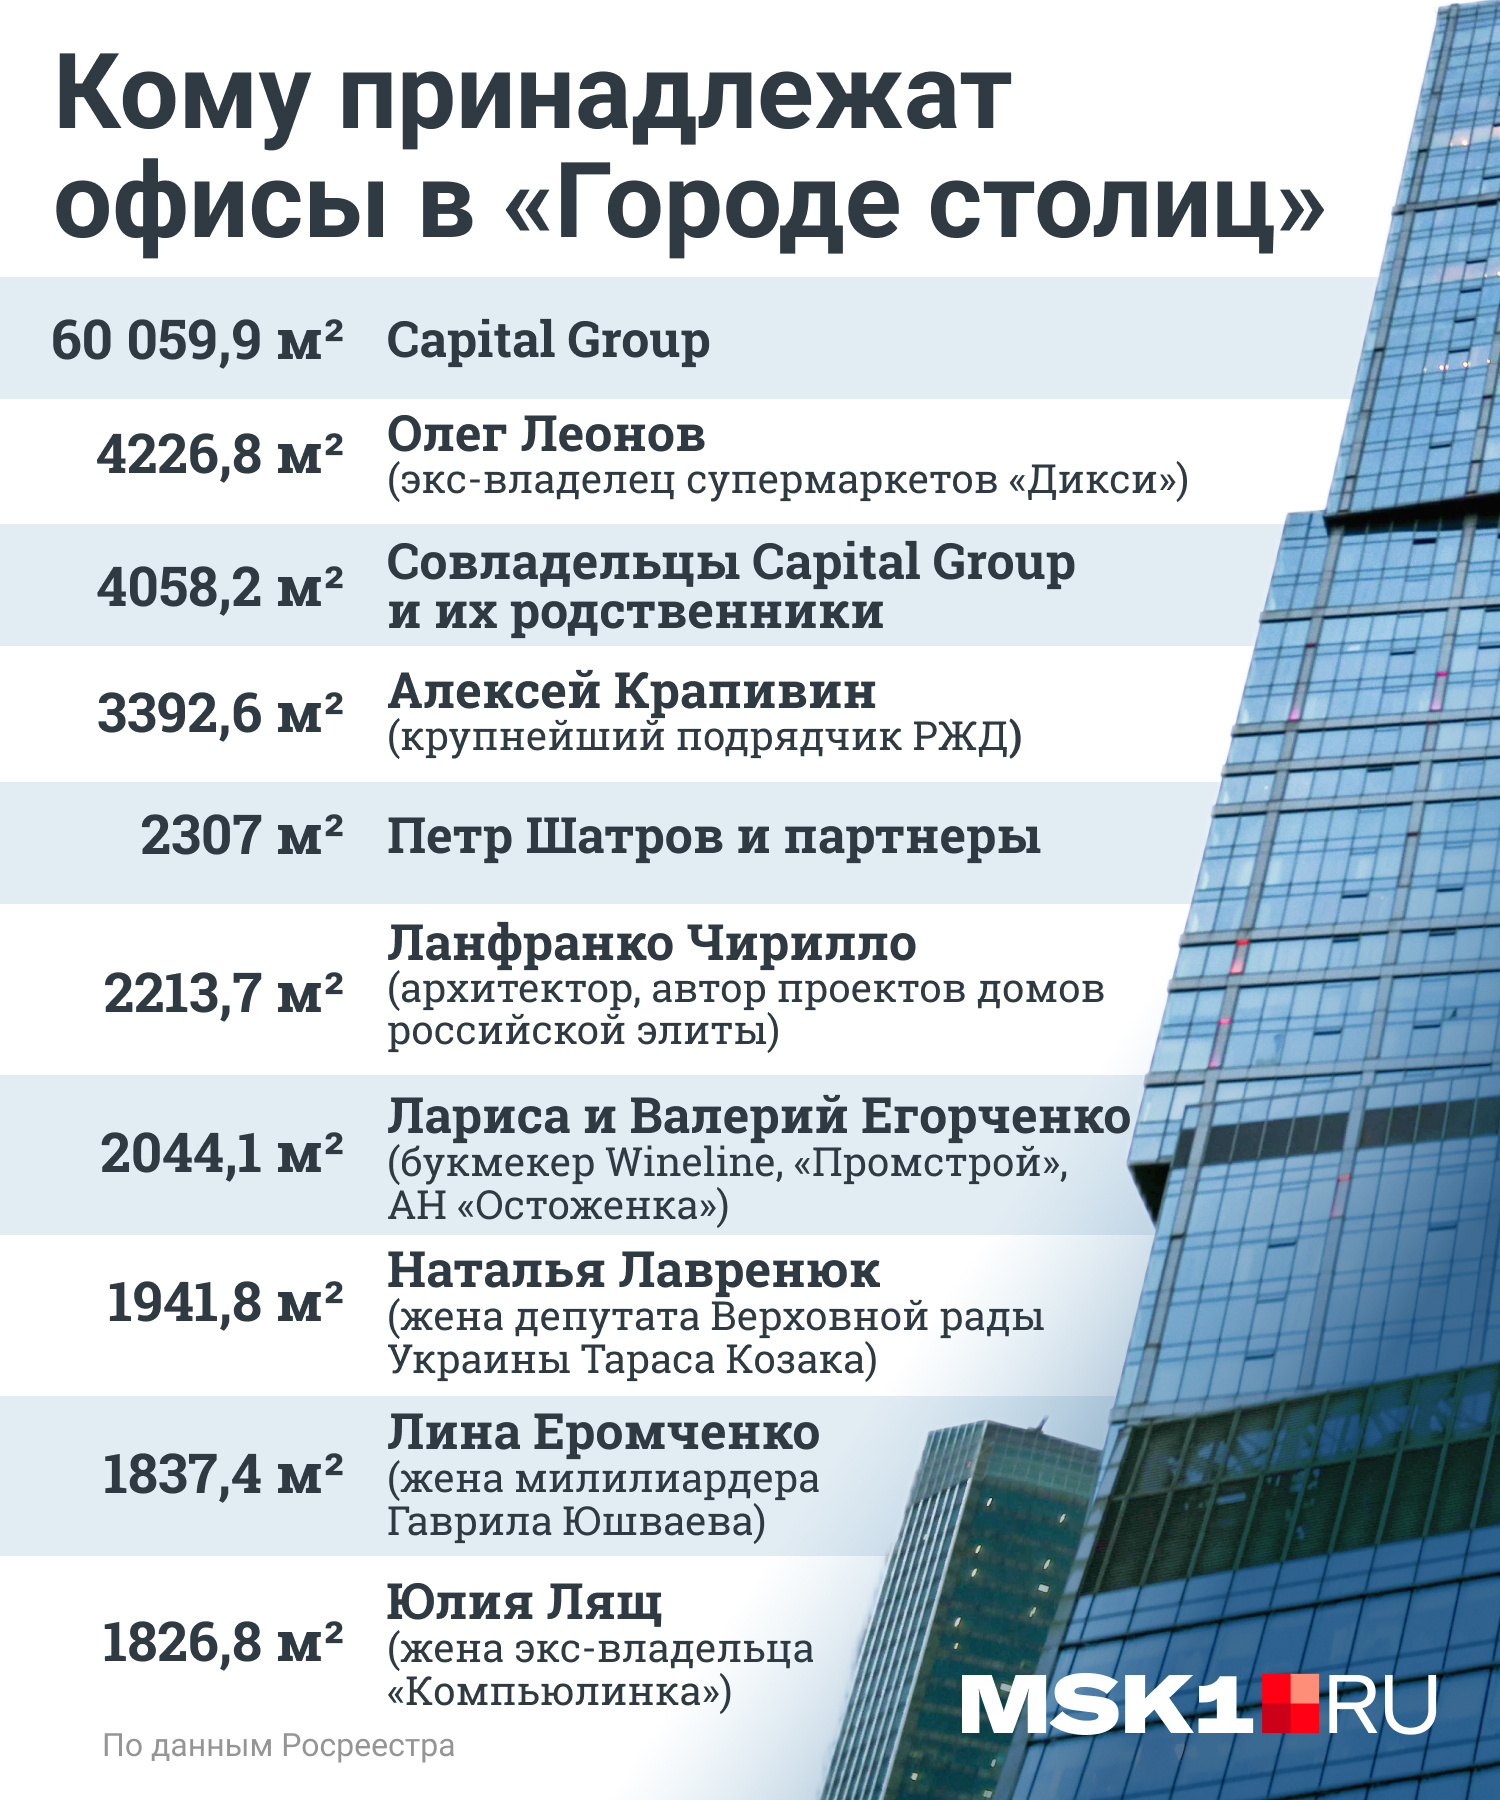 Представительство Челябинской области в Москва-Сити ликвидировали и  возродили под другой вывеской - 2 августа 2022 - 74.ru